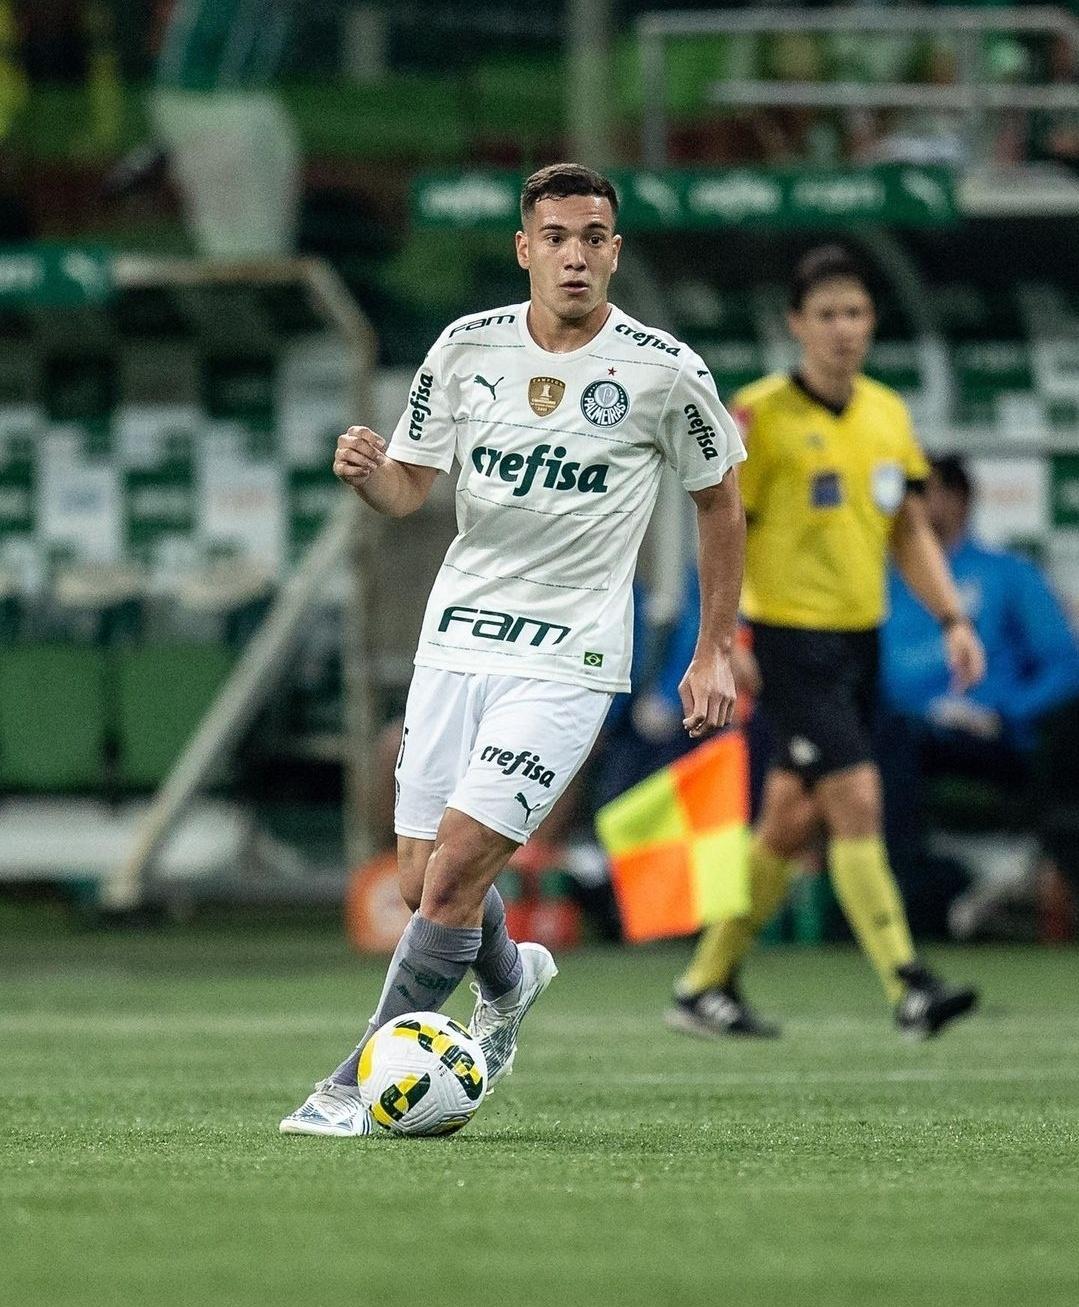 Keyt Alves fala sobre noivado com jogador do Palmeiras: 'Tentamos